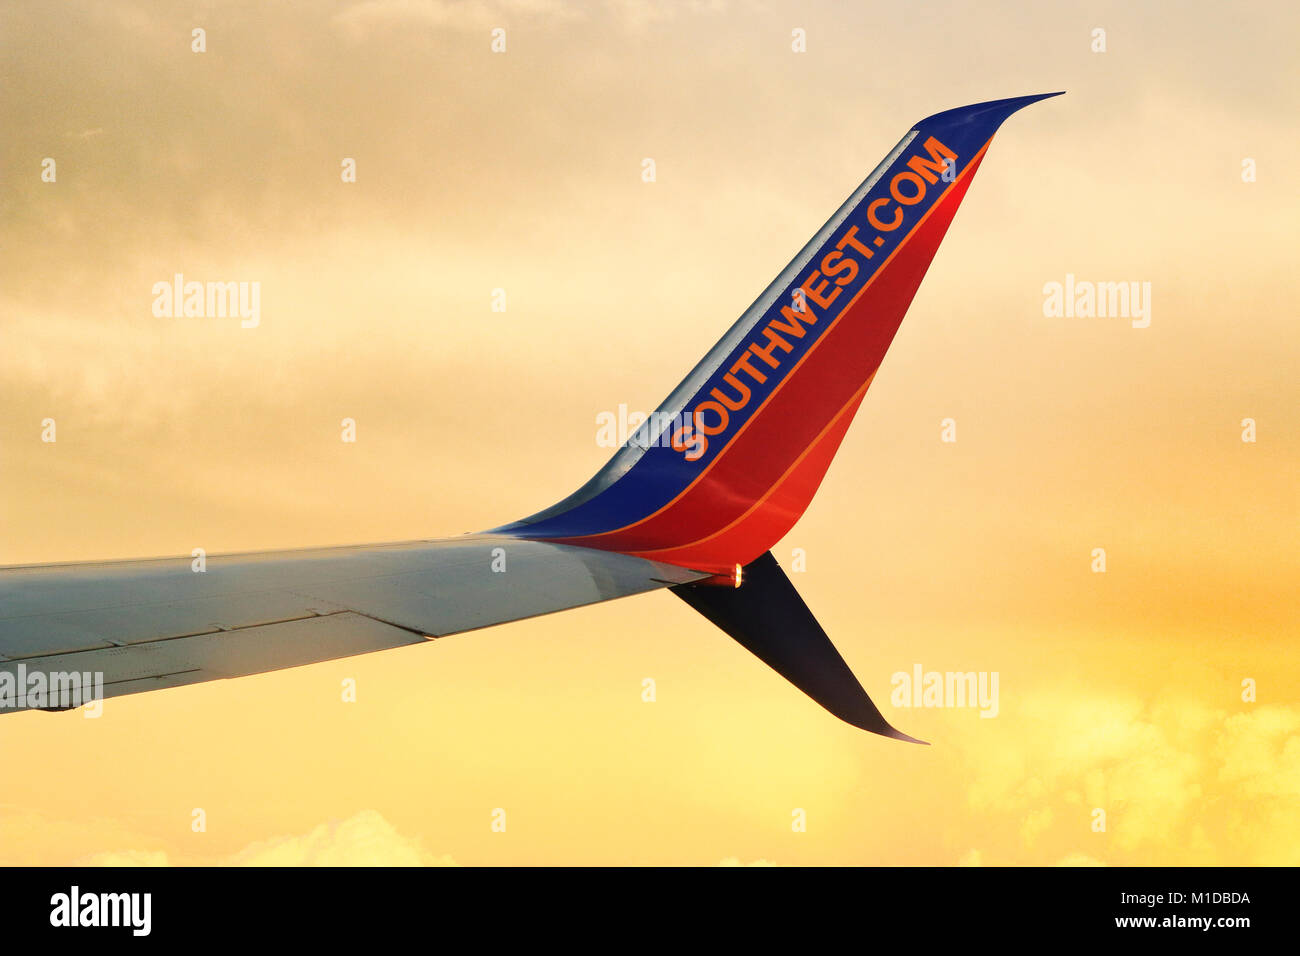 Winglet von Beoing 737 plane Lager Southwest Airline Logo und Website fliegen mit Sonnenuntergang Wolken Hintergrund. Boeing 737 Winglet-design auf b beantragt Stockfoto